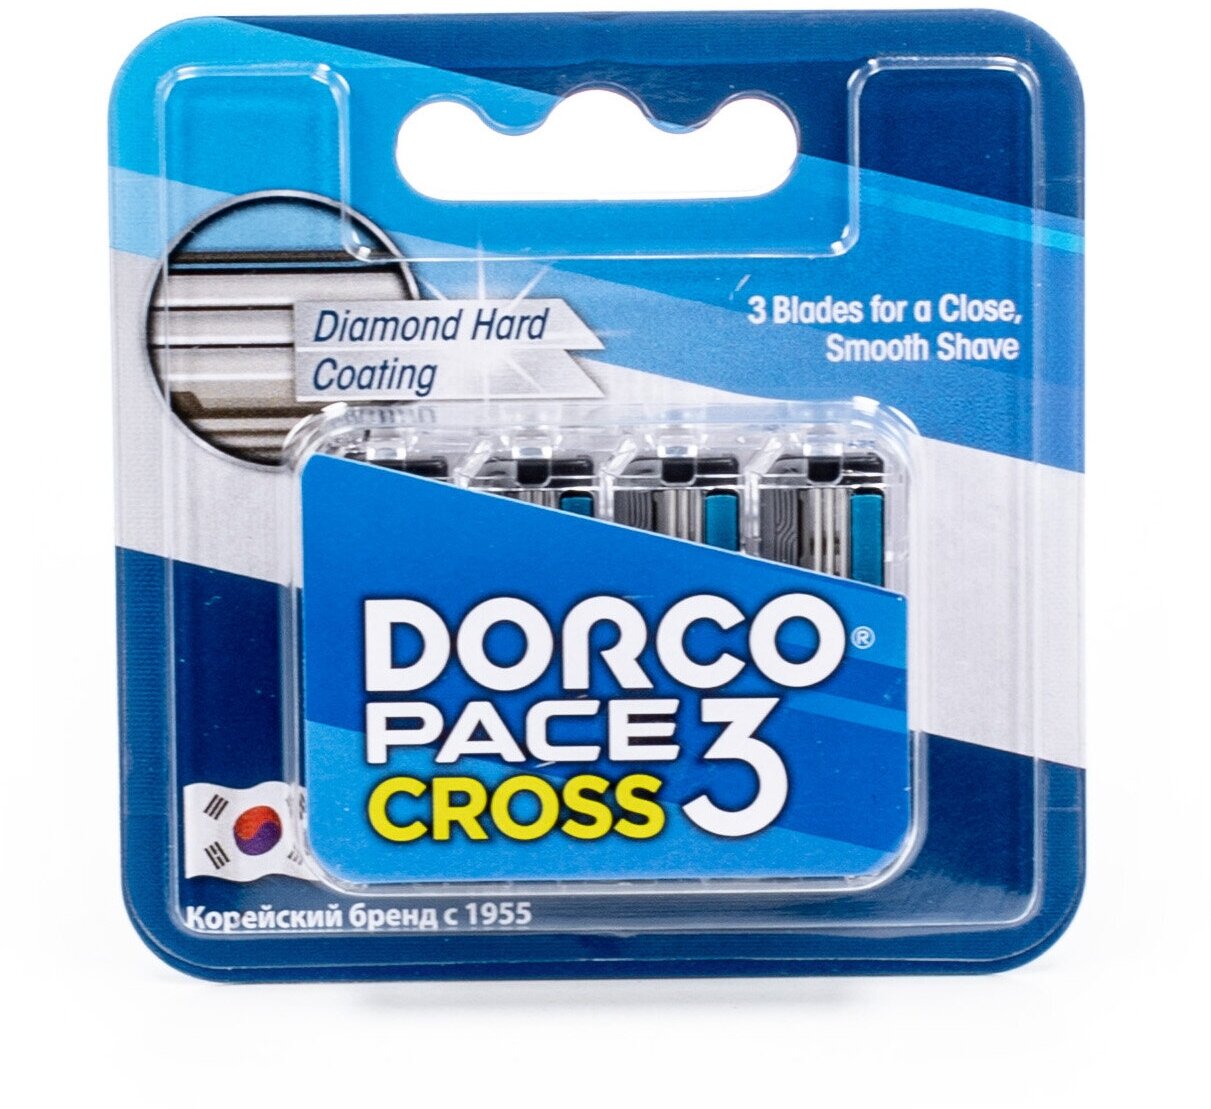 Сменные кассеты Dorco CROSS3, 3-лезвийные, крепление CROSS, увл. полоса (4 сменные кассеты)